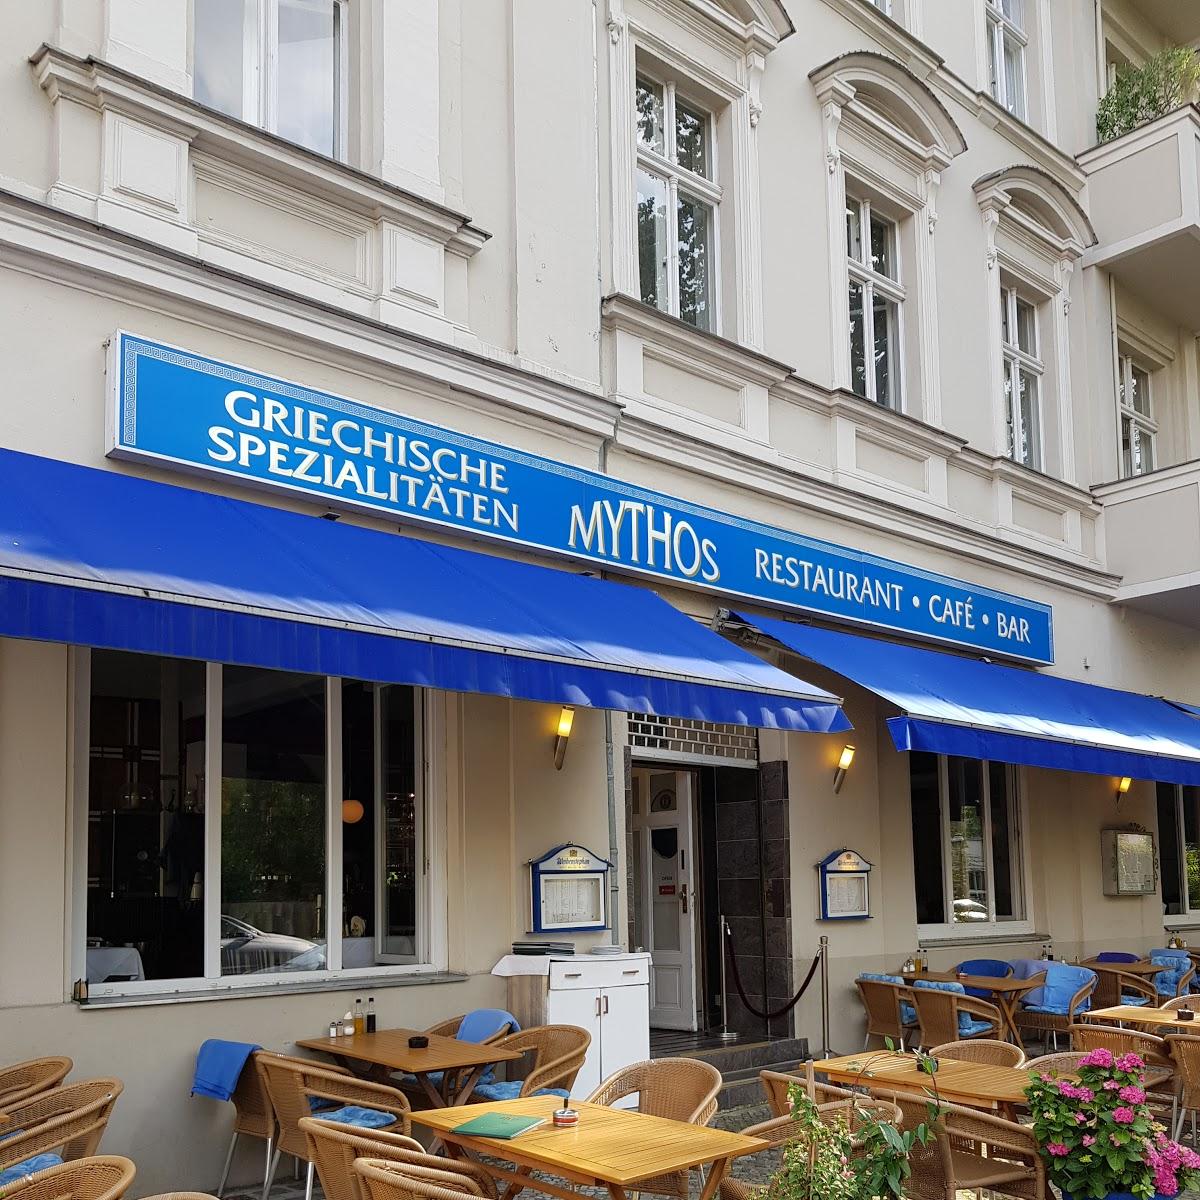 Restaurant "Restaurant Mythos" in Berlin